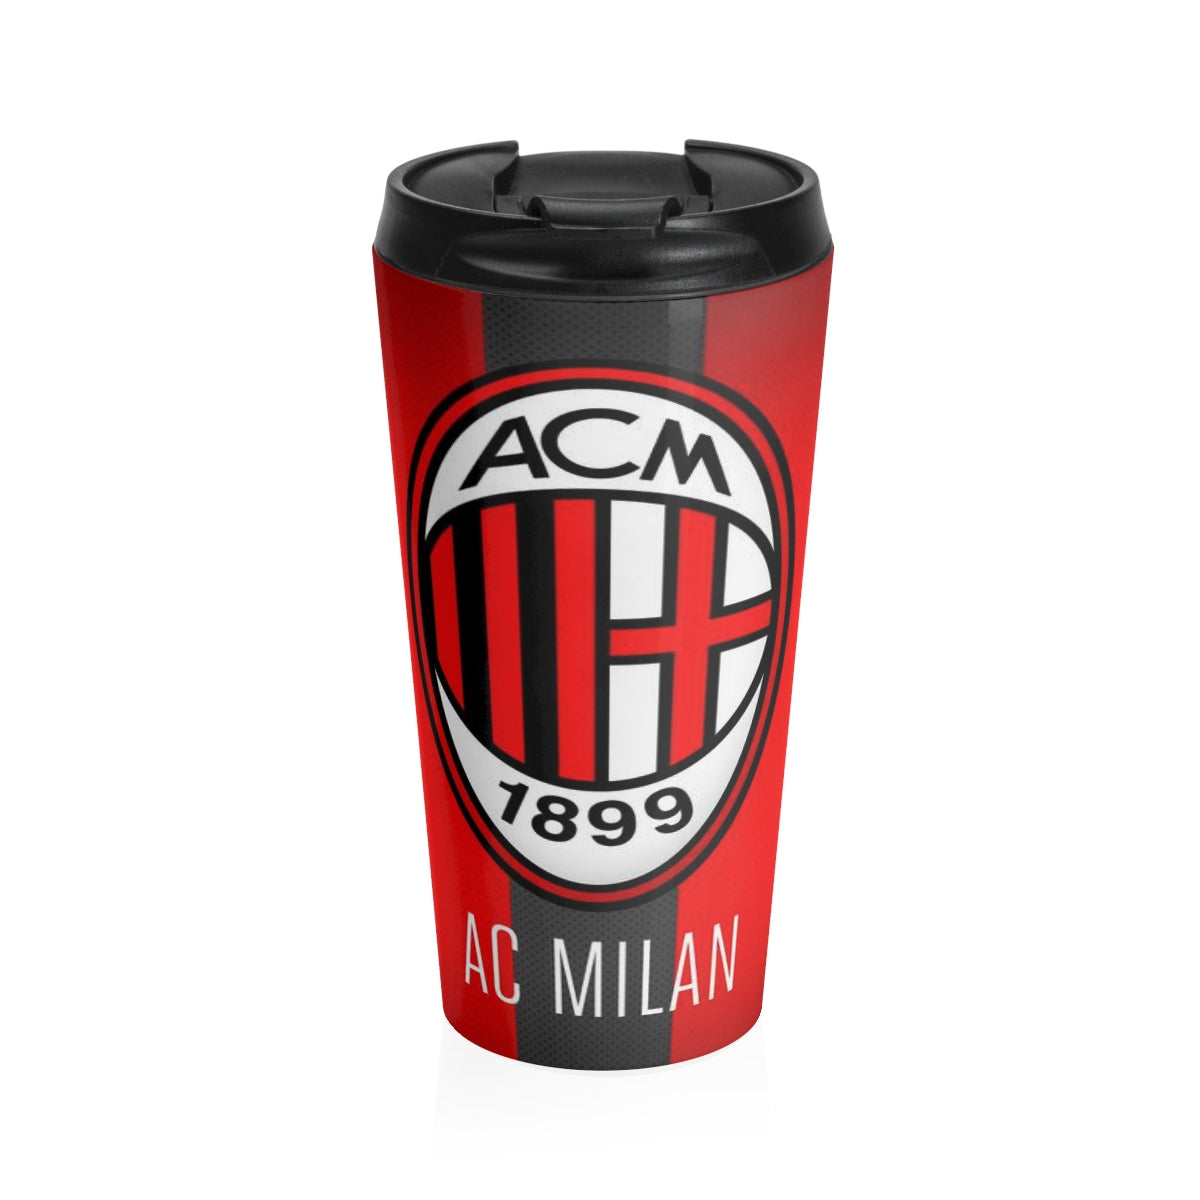 AC Milan Stainless Steel Travel Mug